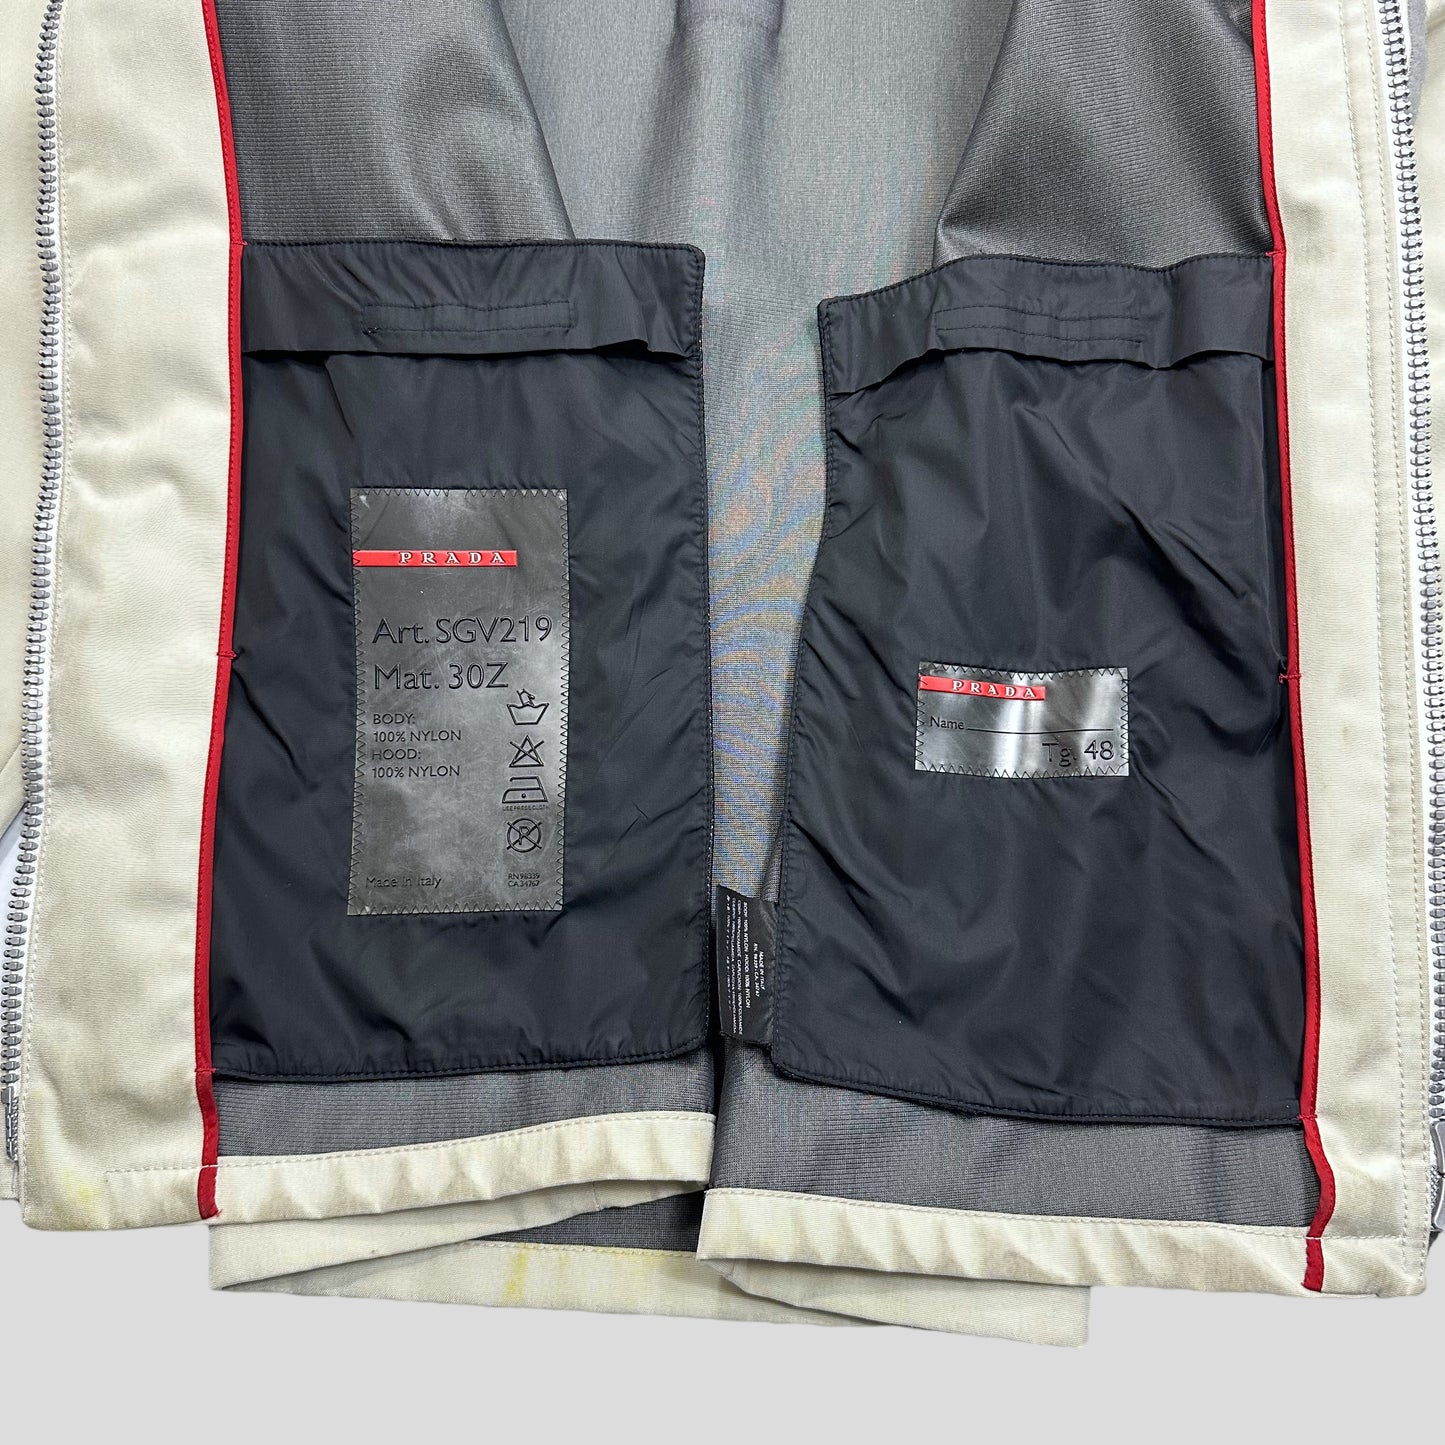 Prada Sport 2000 Ballistic Nylon Goretex Jacket - M/L